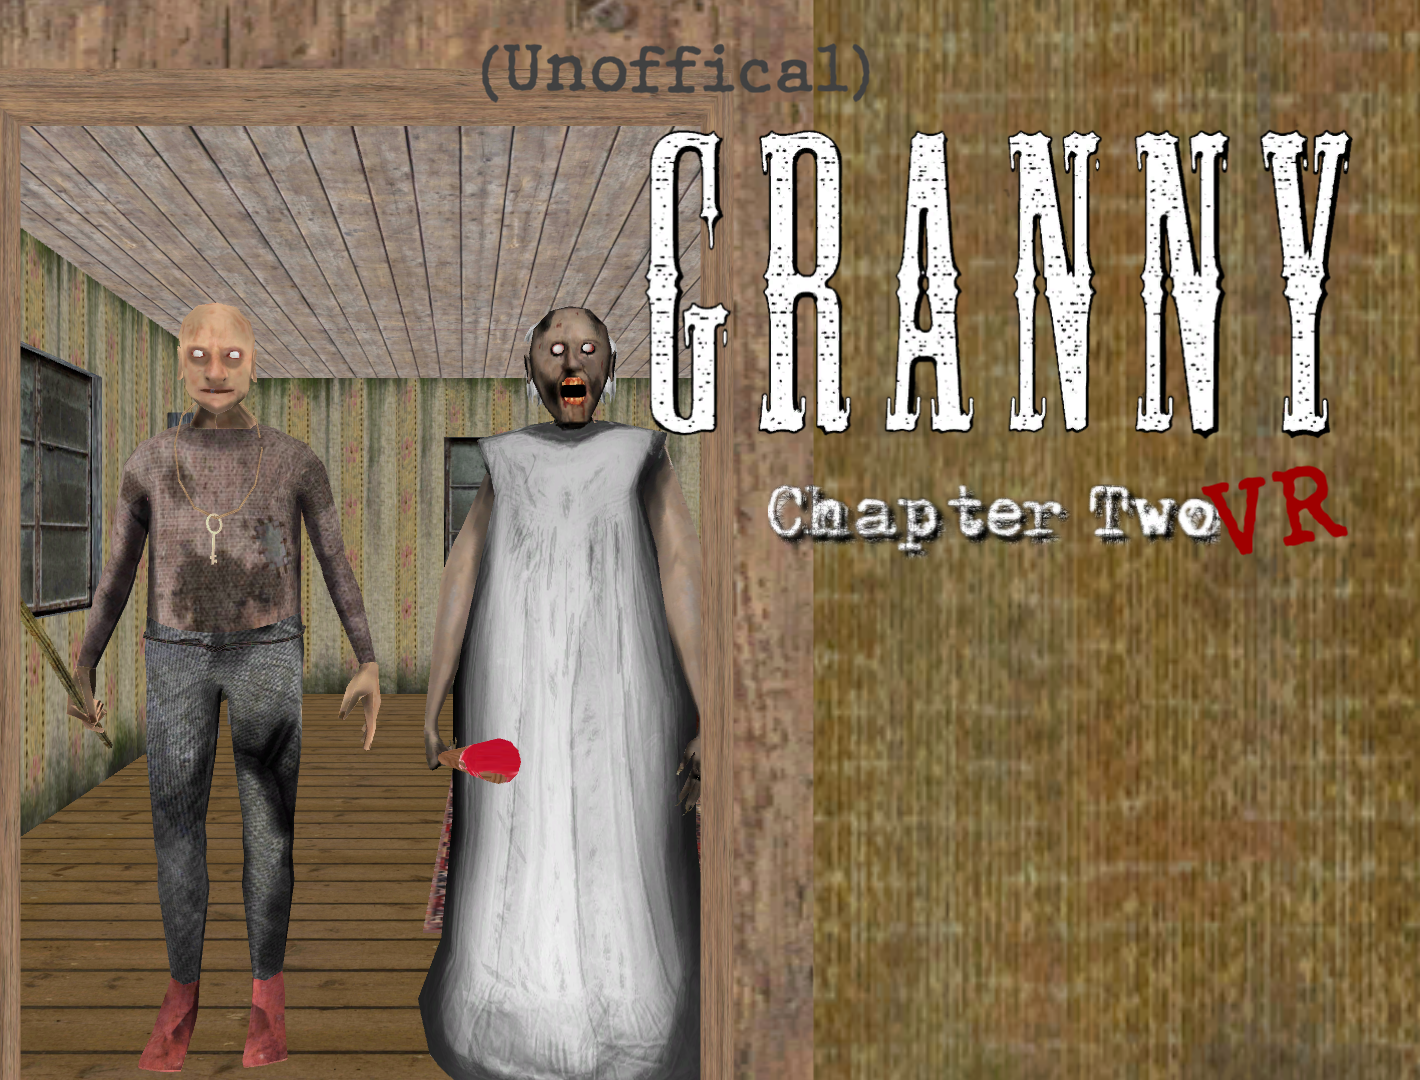 Granny 3 Mod Menu, Granny 3 Mod Apk, GRANNY 3 MOD MENU APK, Gaming  Reboot, Granny 3 Mod Menu, Granny 3 Mod Apk